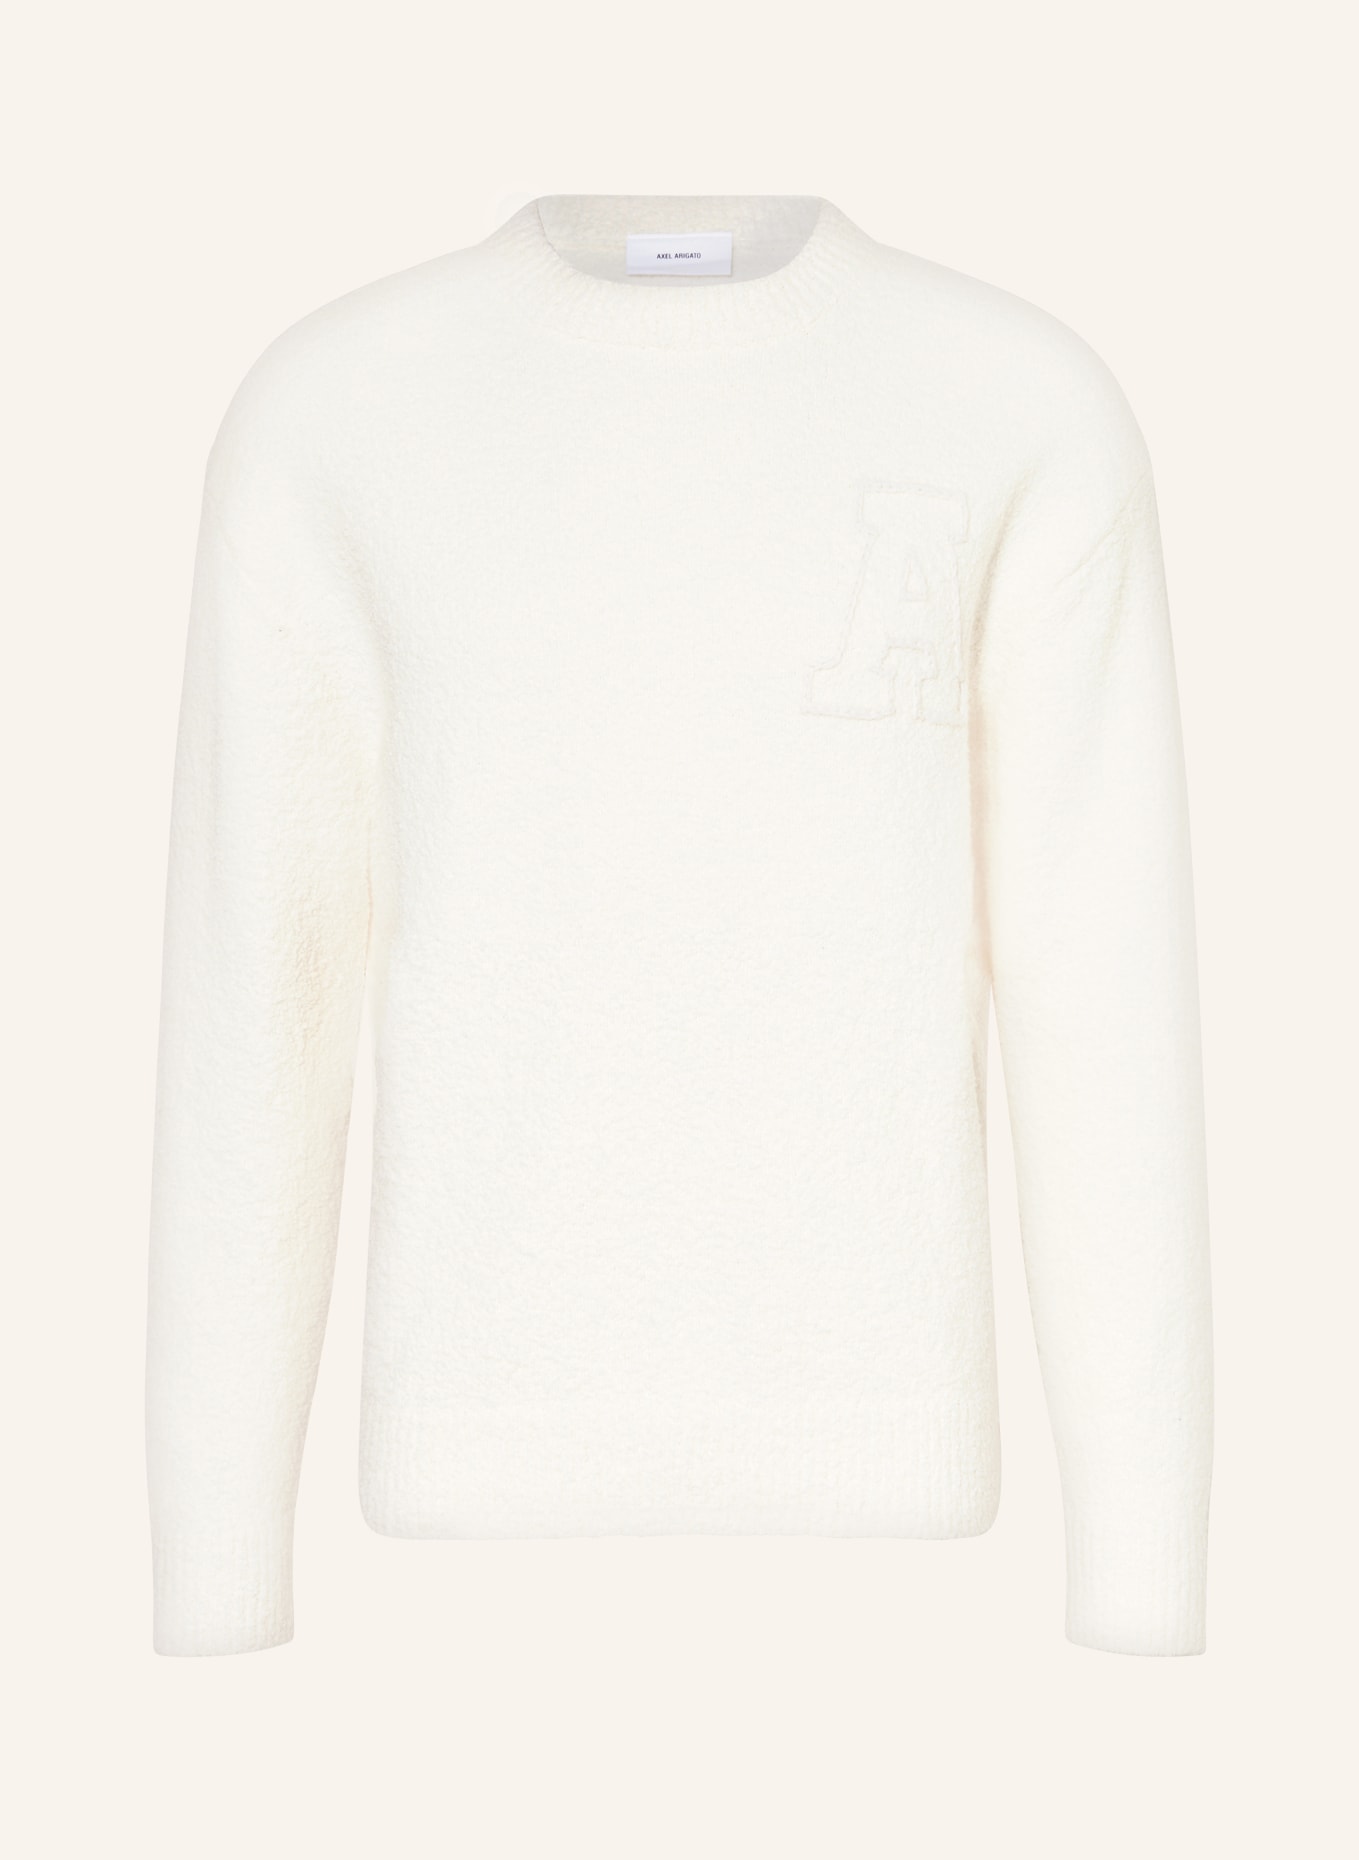 AXEL ARIGATO Sweater, Color: ECRU (Image 1)